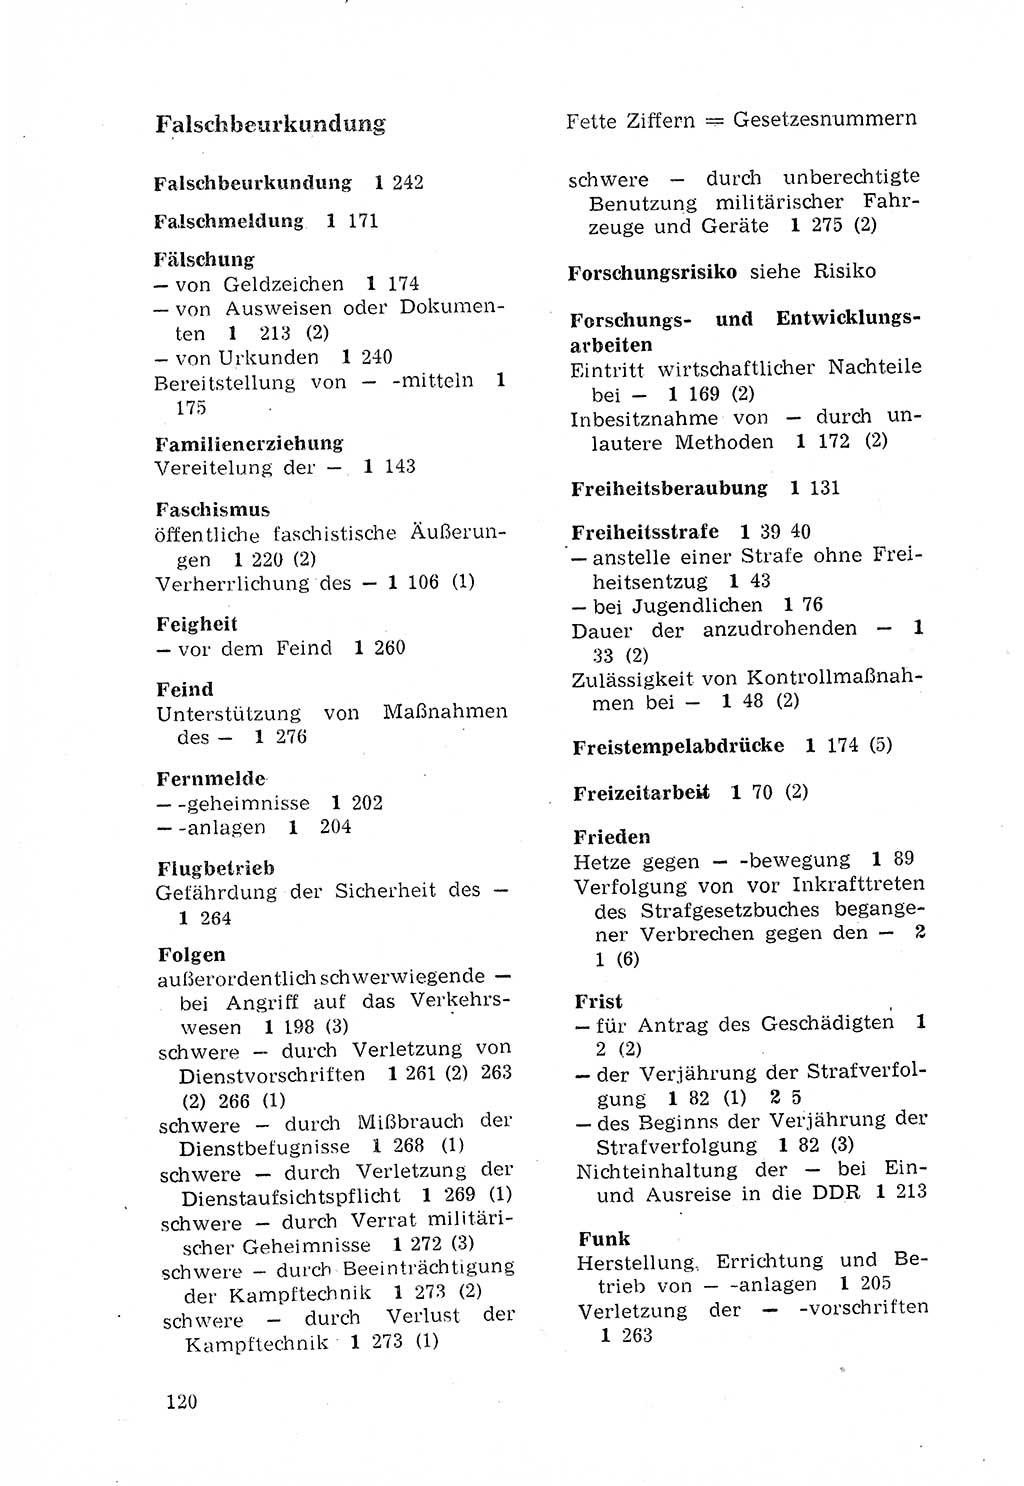 Strafgesetzbuch (StGB) der Deutschen Demokratischen Republik (DDR) 1968, Seite 120 (StGB DDR 1968, S. 120)